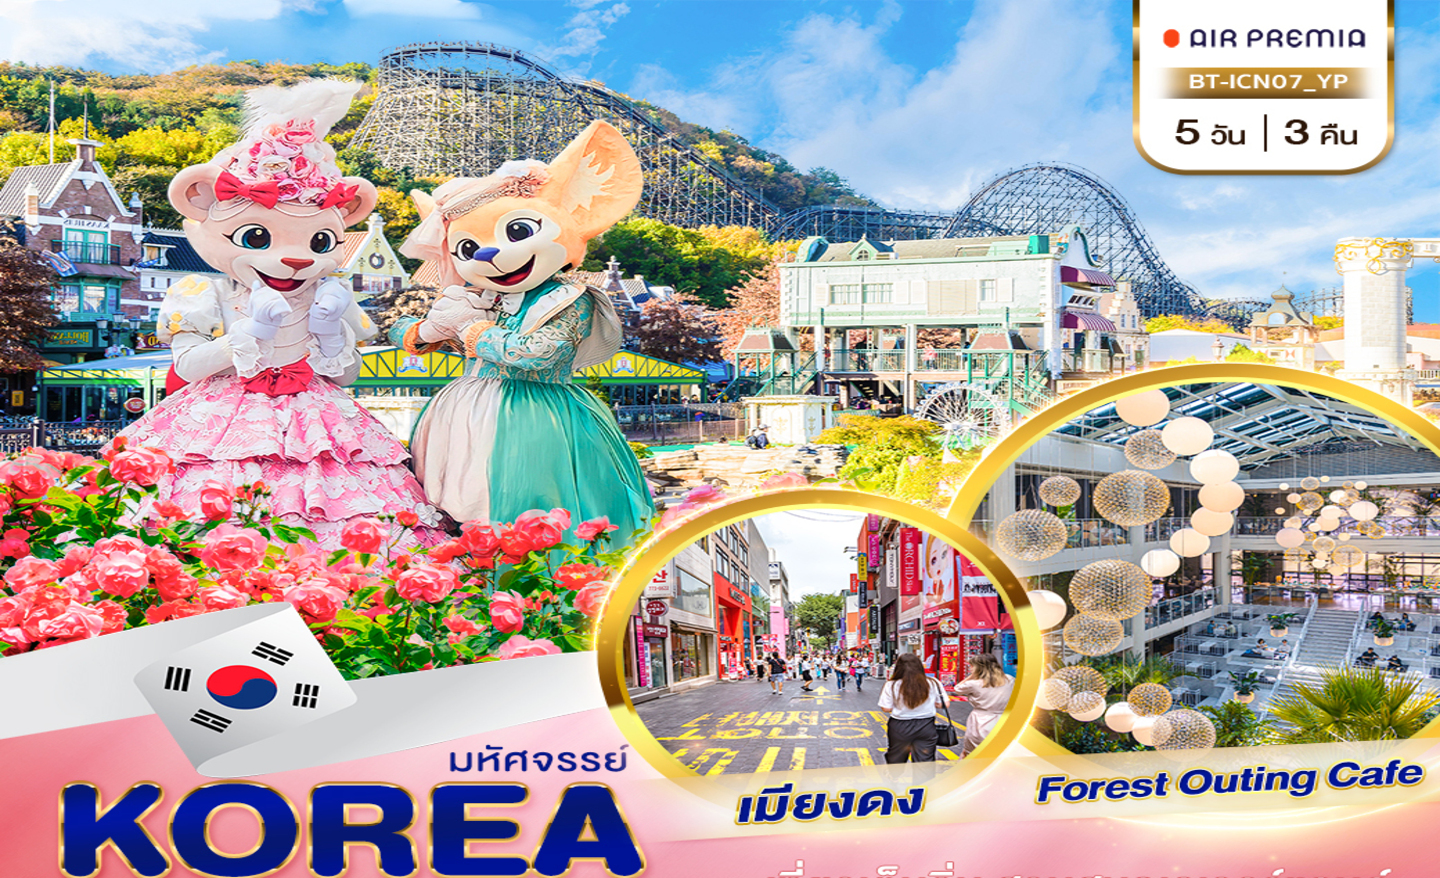 ทัวร์เกาหลี มหัศจรรย์…KOREA สวนสนุกเอเวอร์แลนด์ อิสระช้อปปิ้งเต็มวัน (ก.ค.-ก.ย.66)